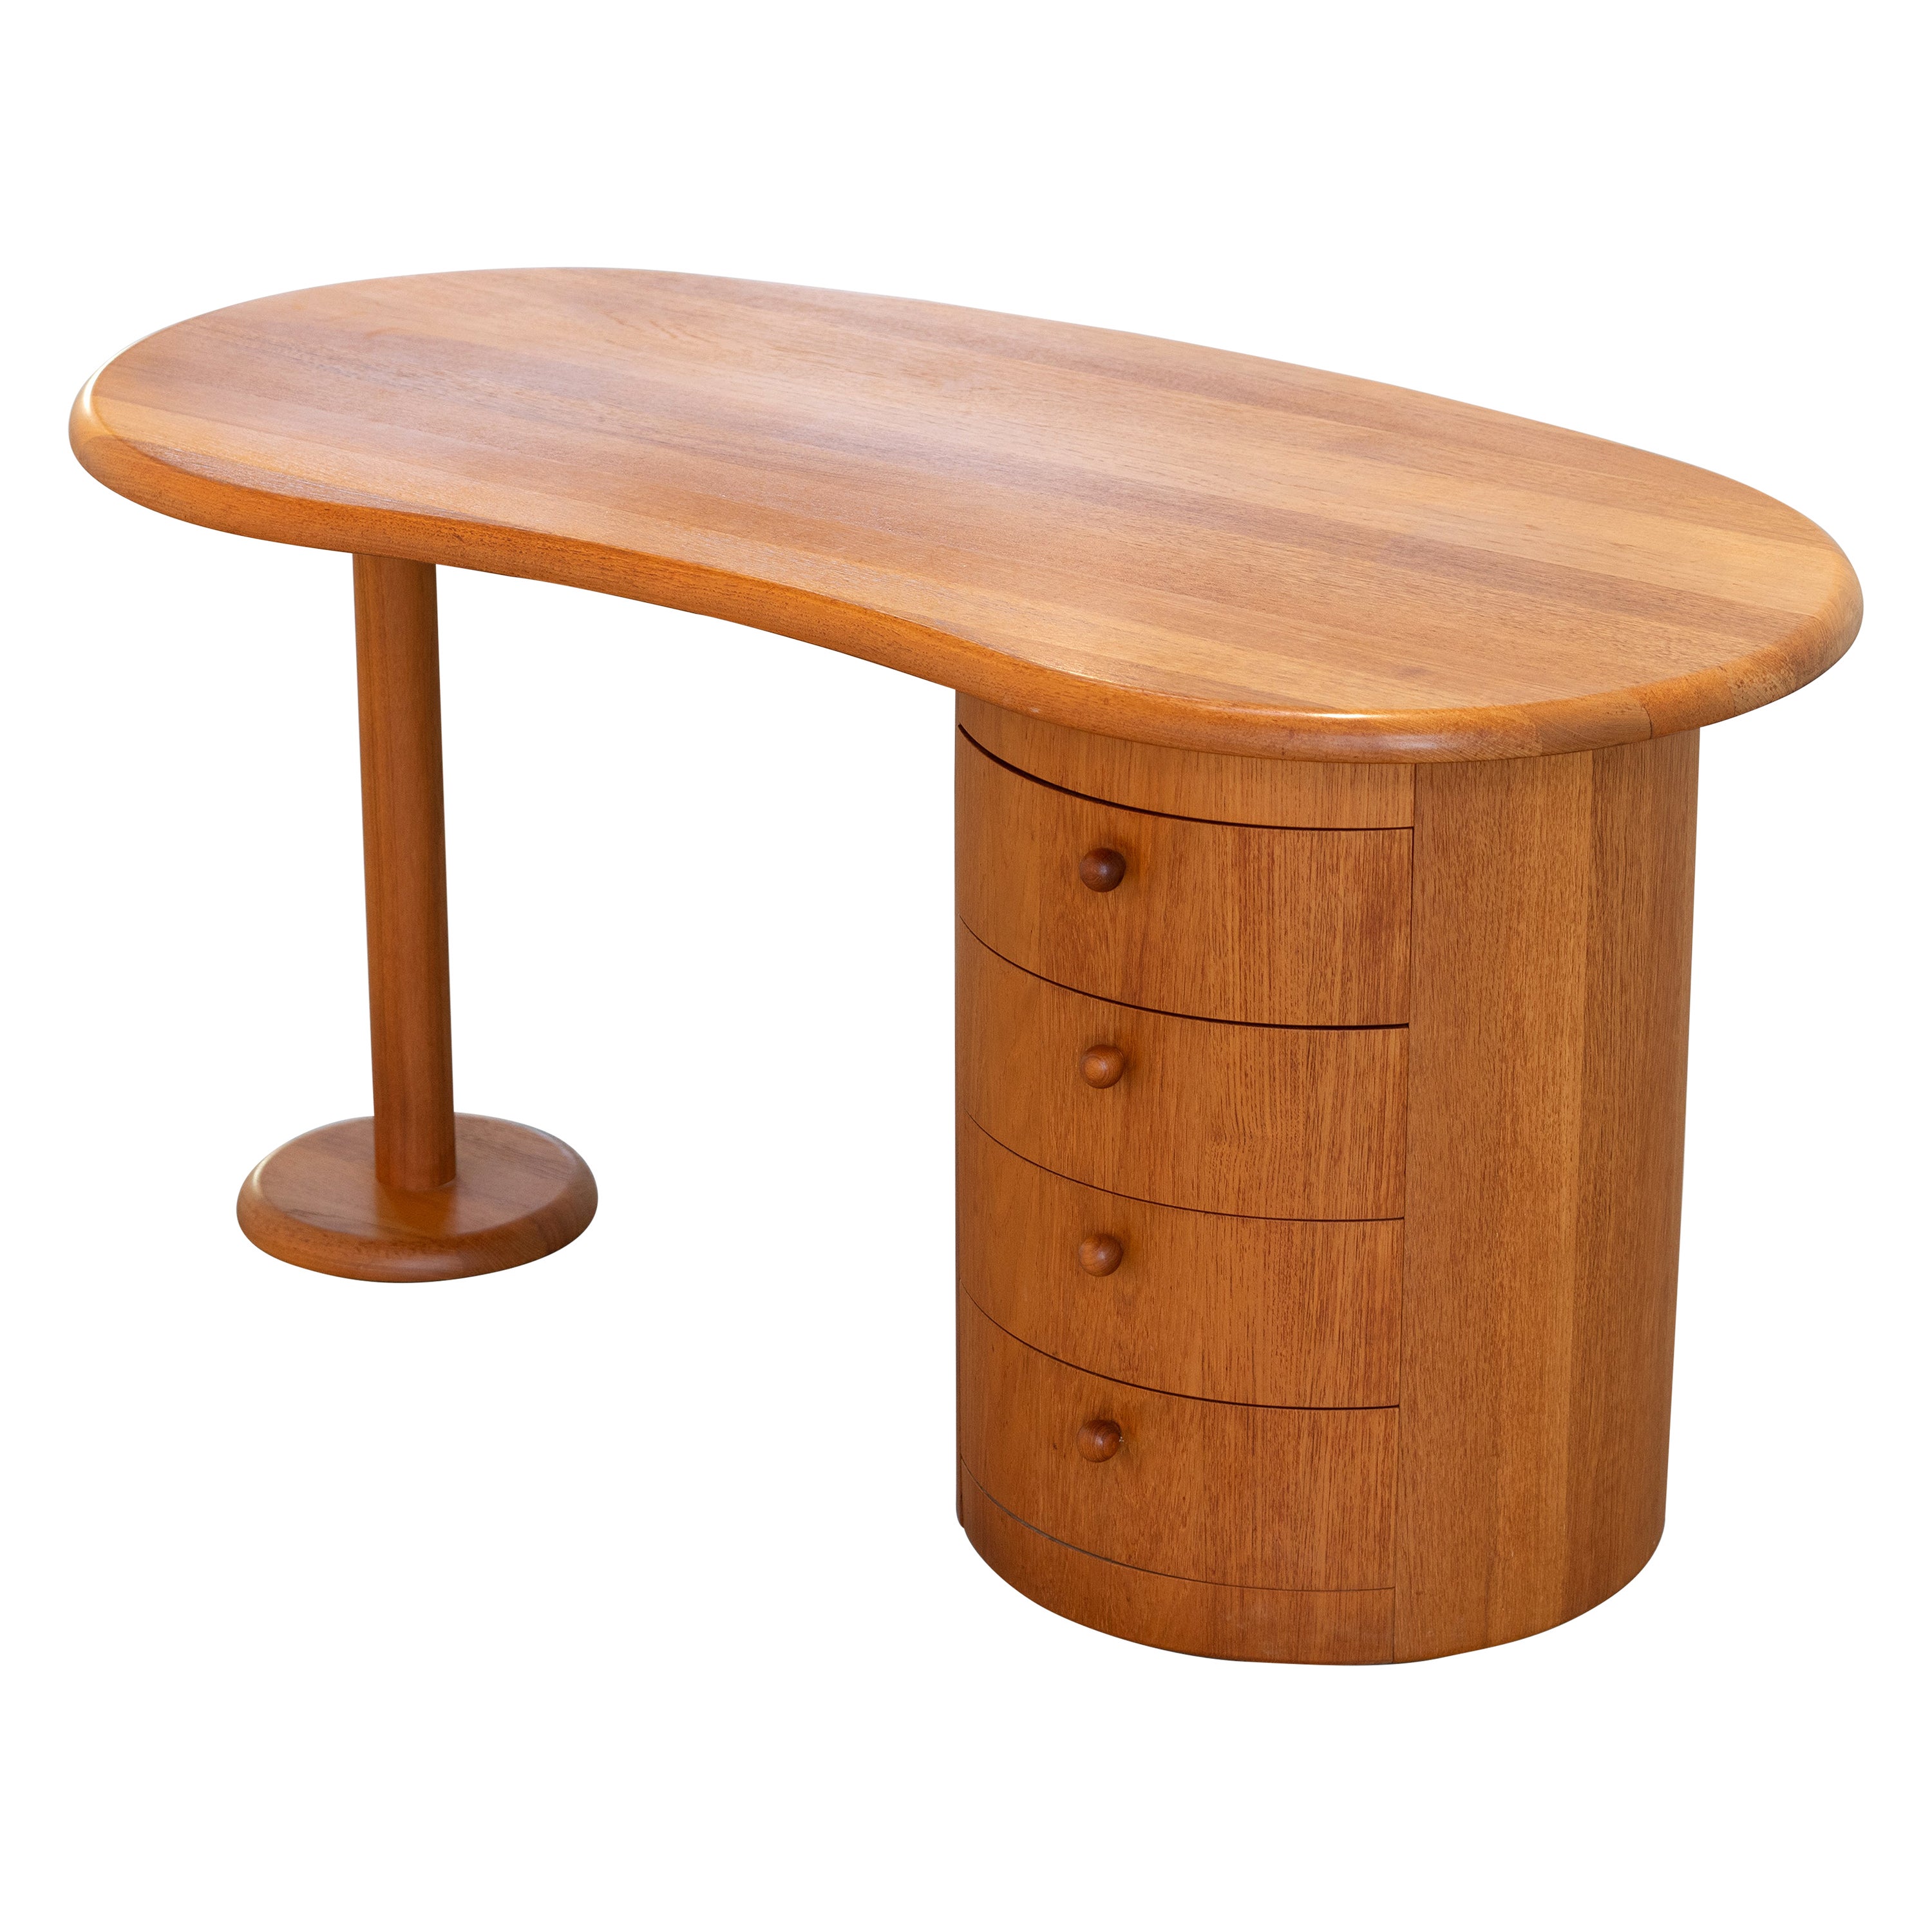 Solid Teak Desk, Kidney Shape, Danish Modern Table by Silkeborg, Denmark, 1970